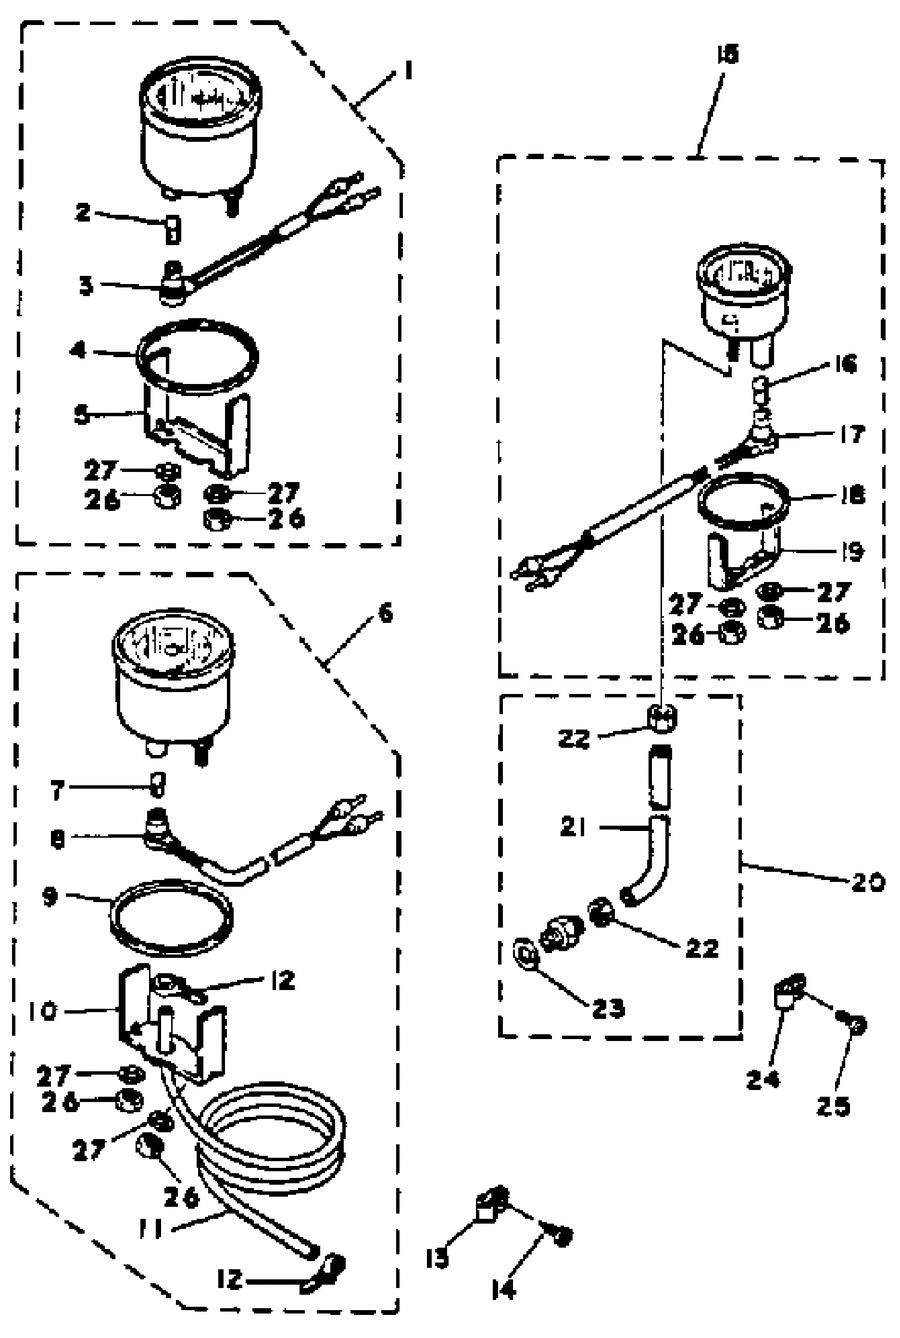 1985 150ETXK OPTIONAL PARTS GAUGES & COMPONENT PARTS 1